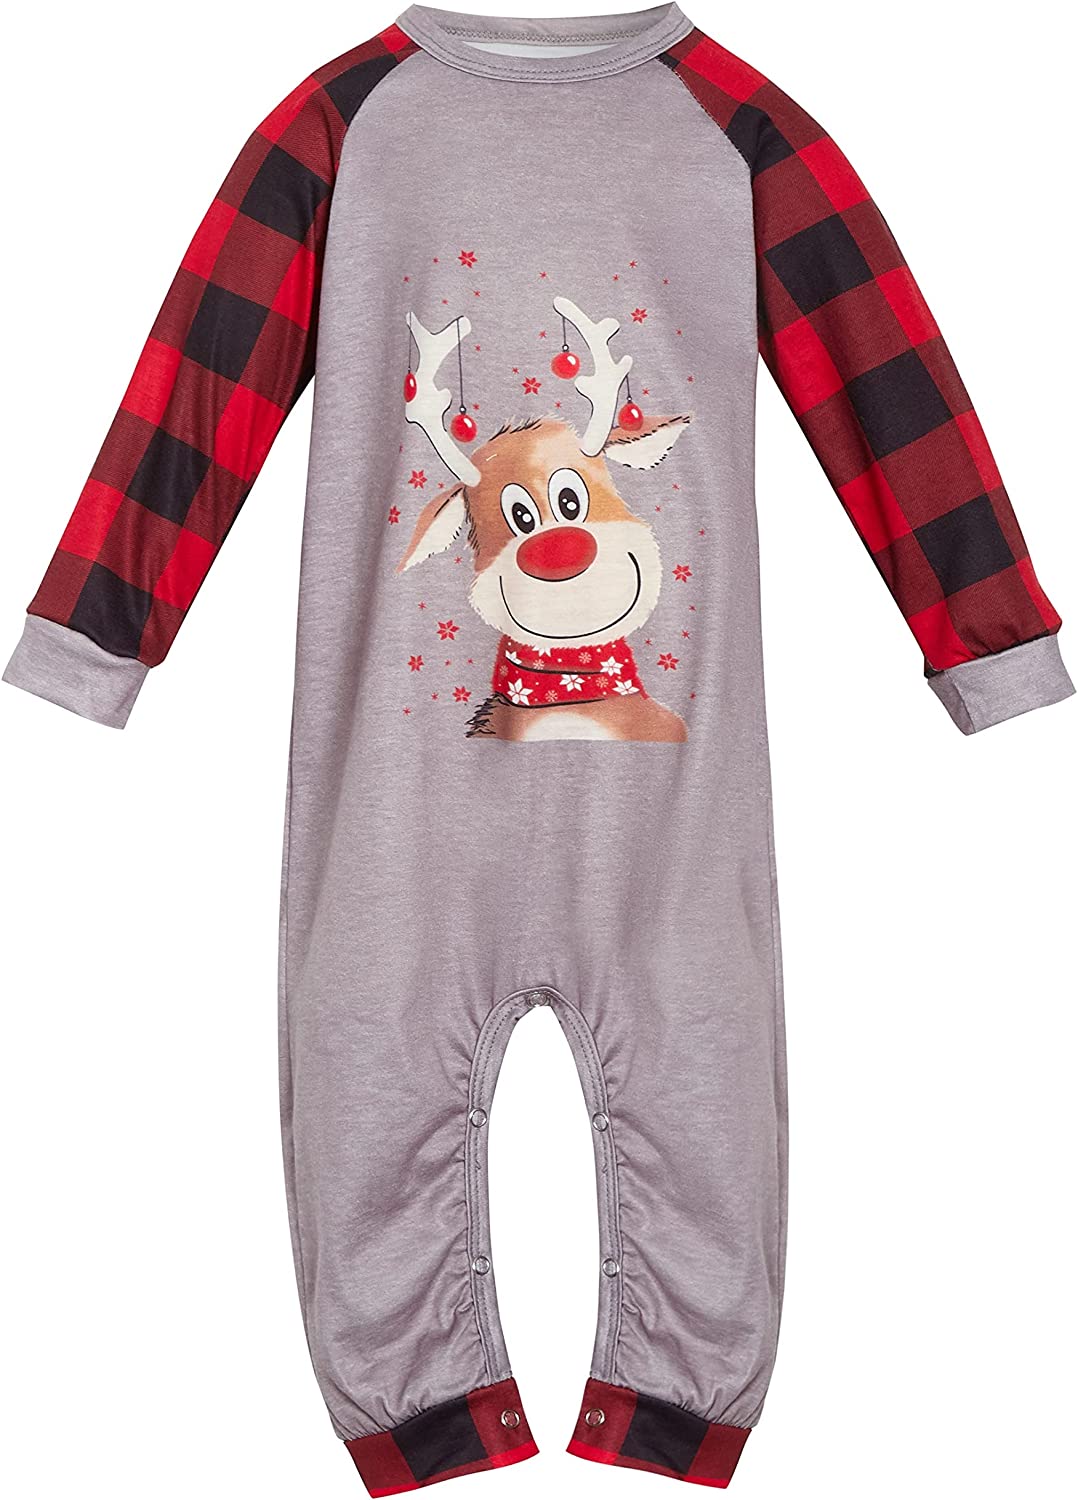 Christmas Pyjama Set Sleepwear Baby